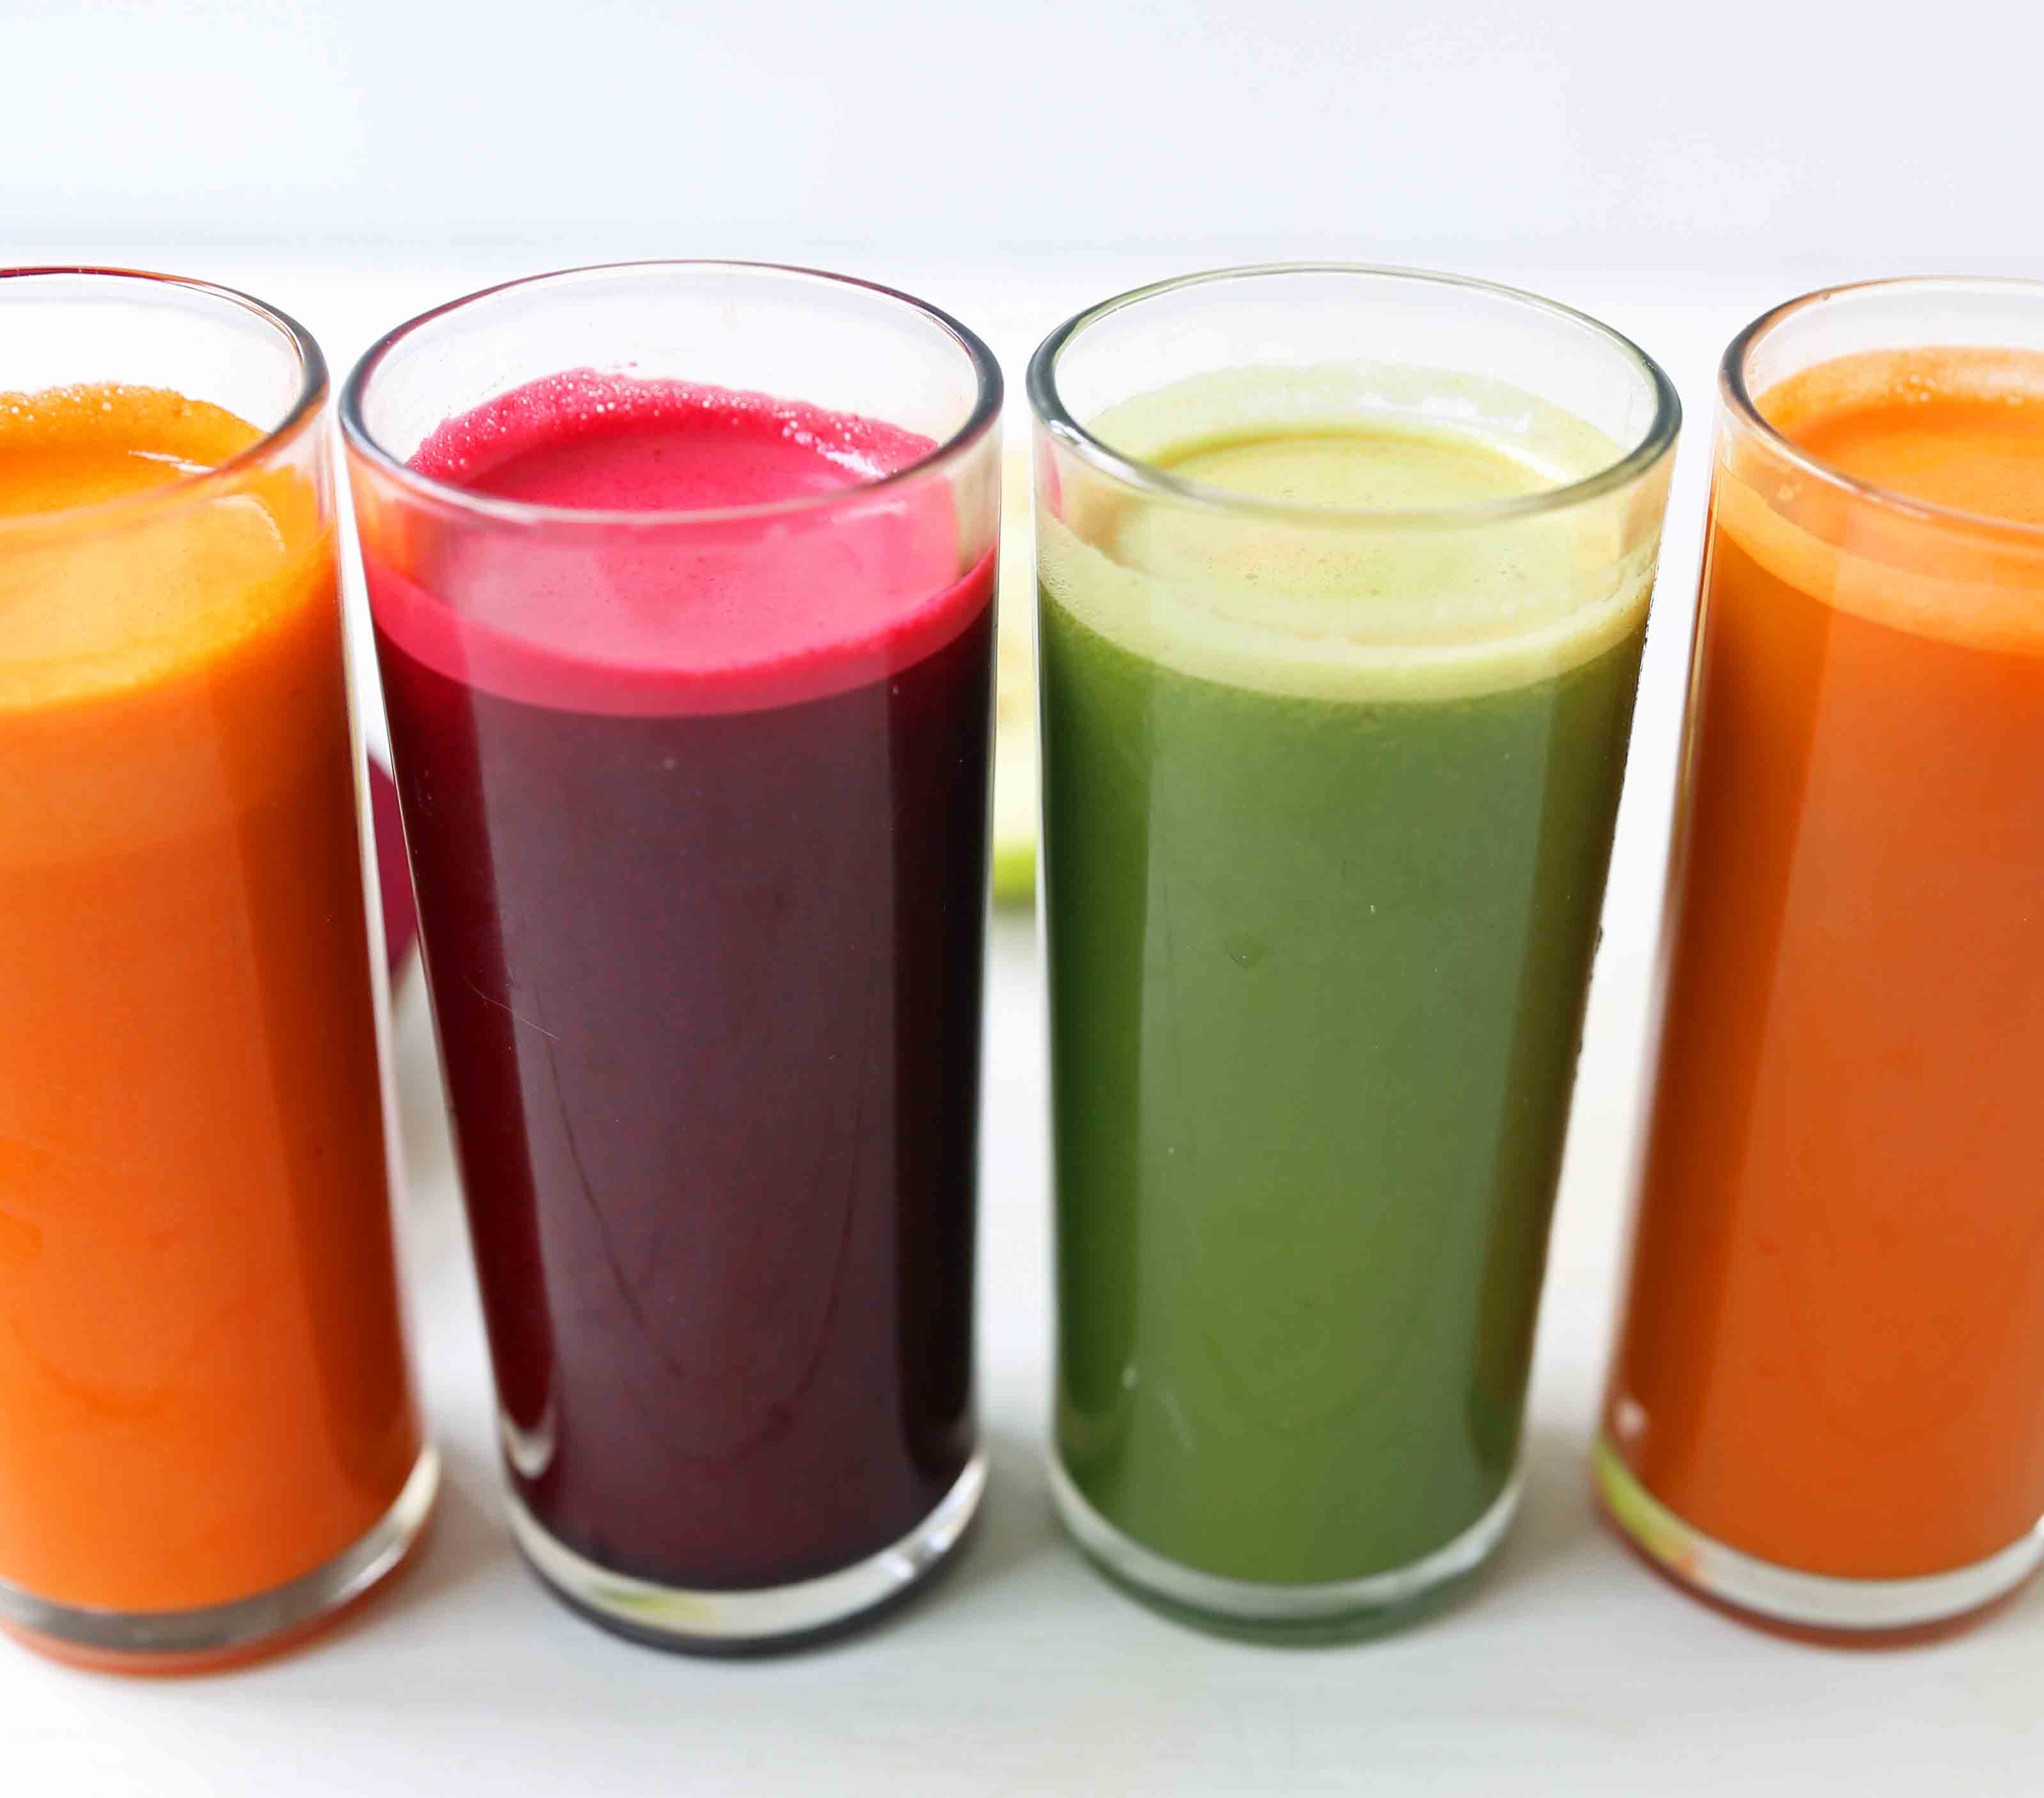 Resep Minuman Segar: Panduan Lengkap untuk Hidrasi Sehat dan Menyegarkan